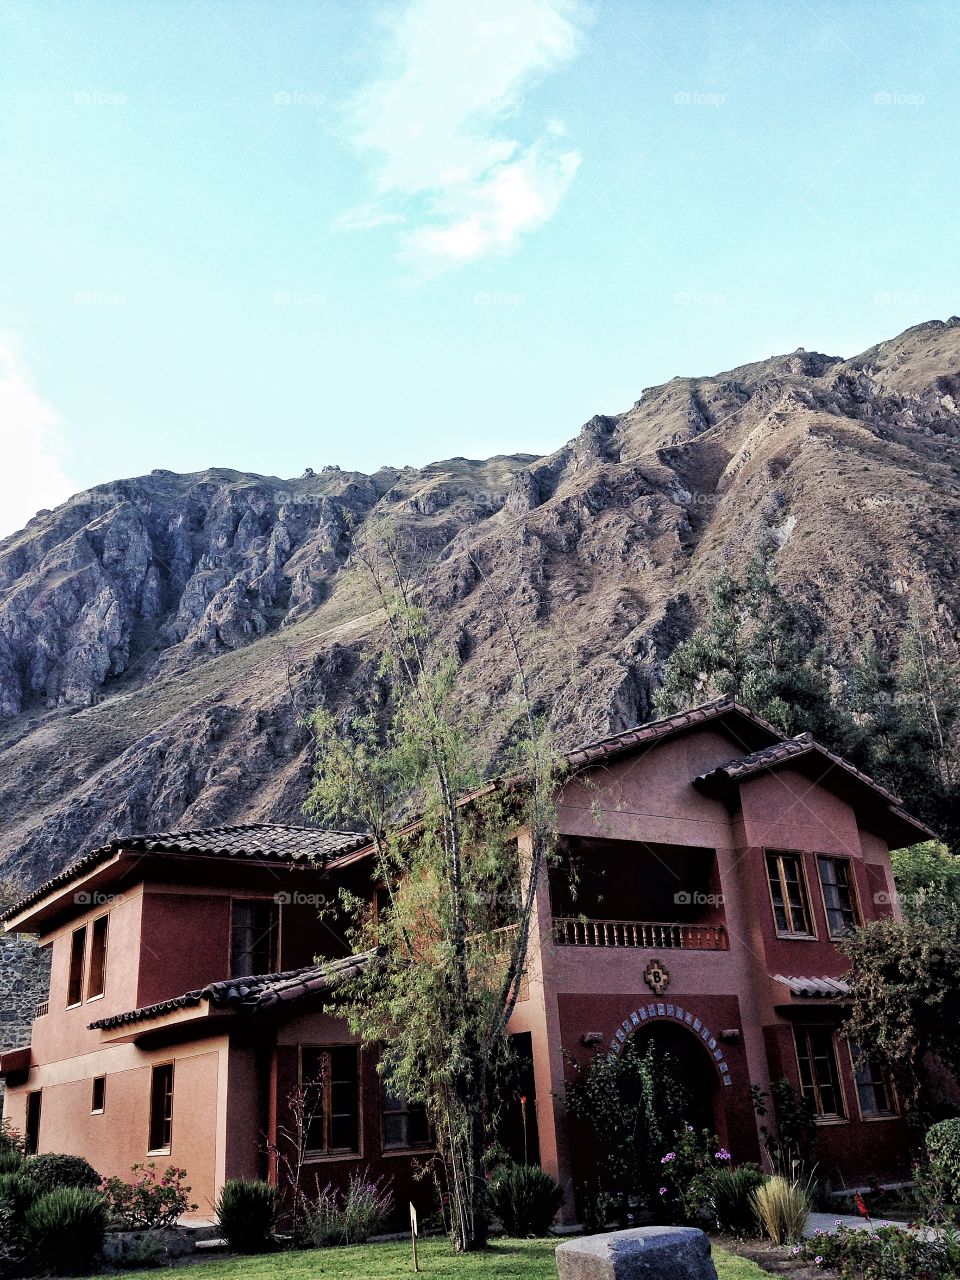 Dream house In Peru